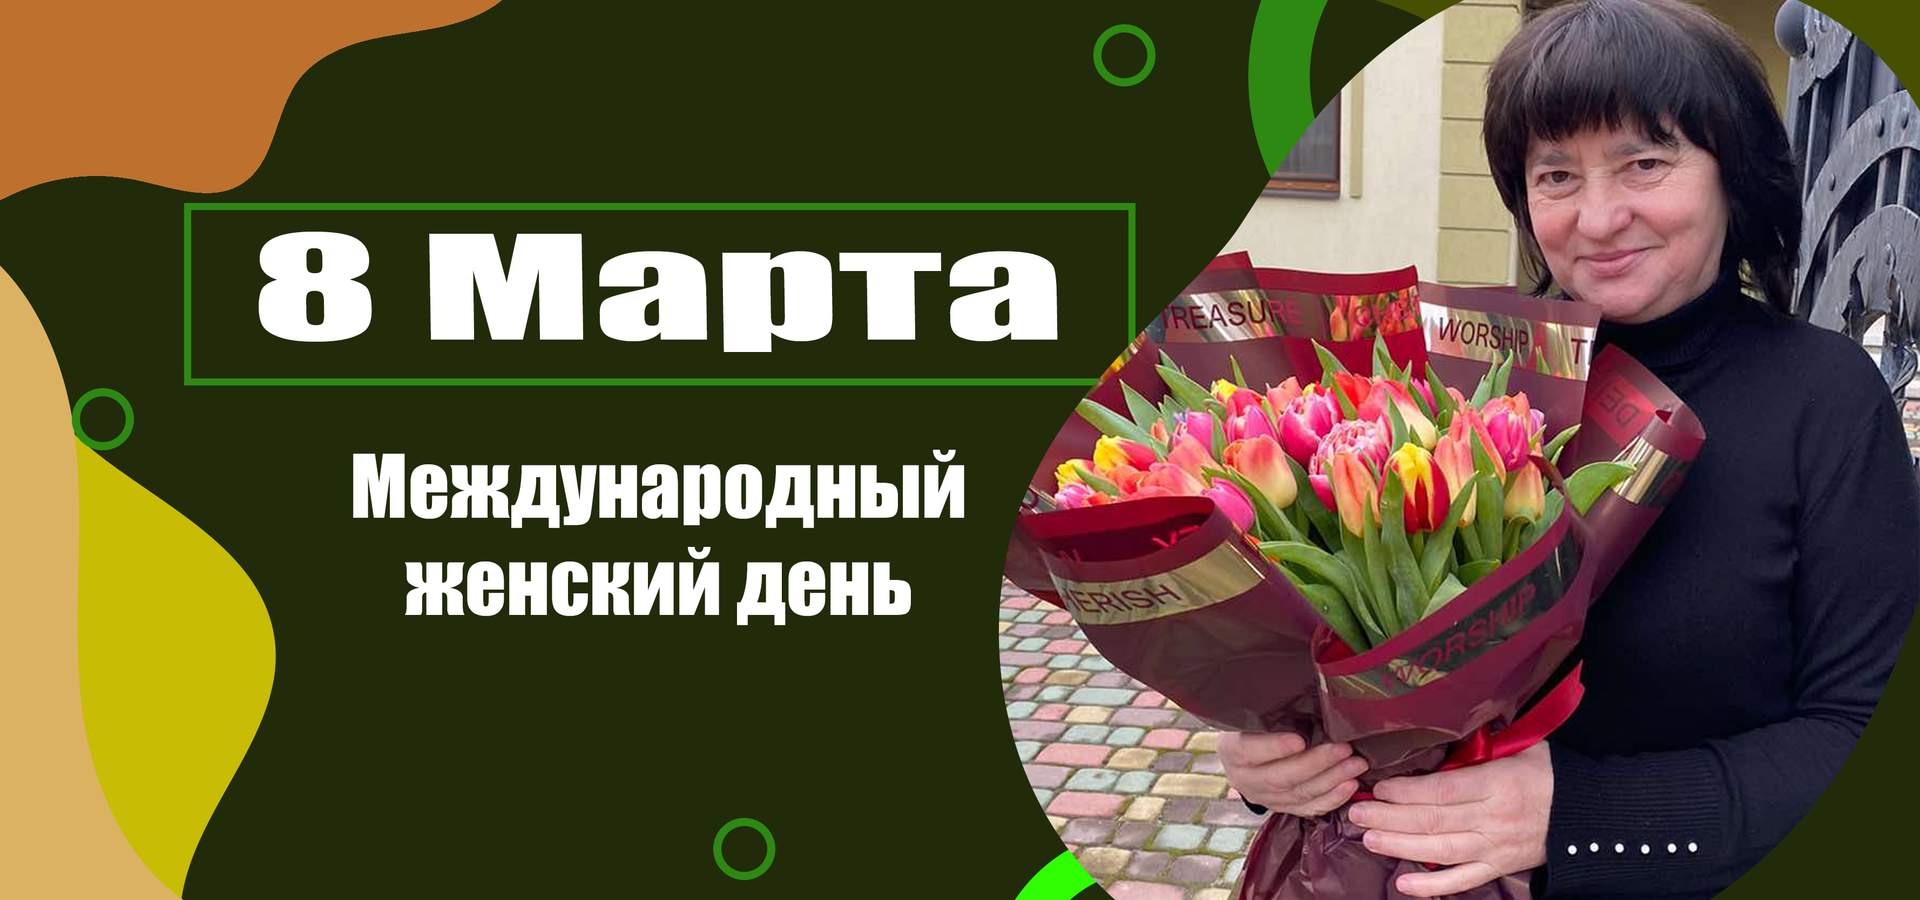 Цветы и подарки<br \>на 8 Марта